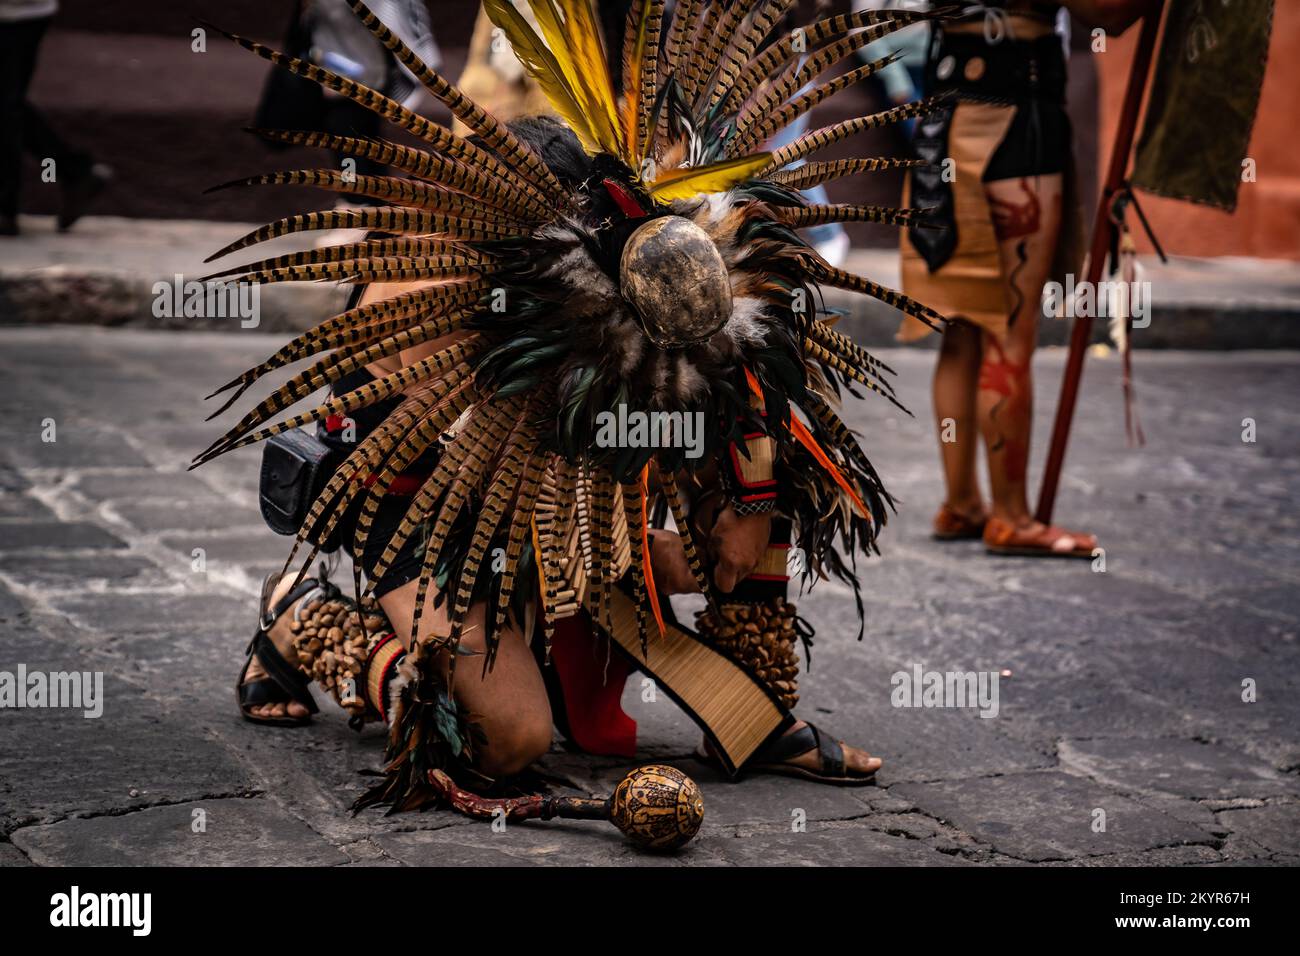 Danza de Indios gathering of native tribes ritual in San Miguel de Allende, Mexico Stock Photo